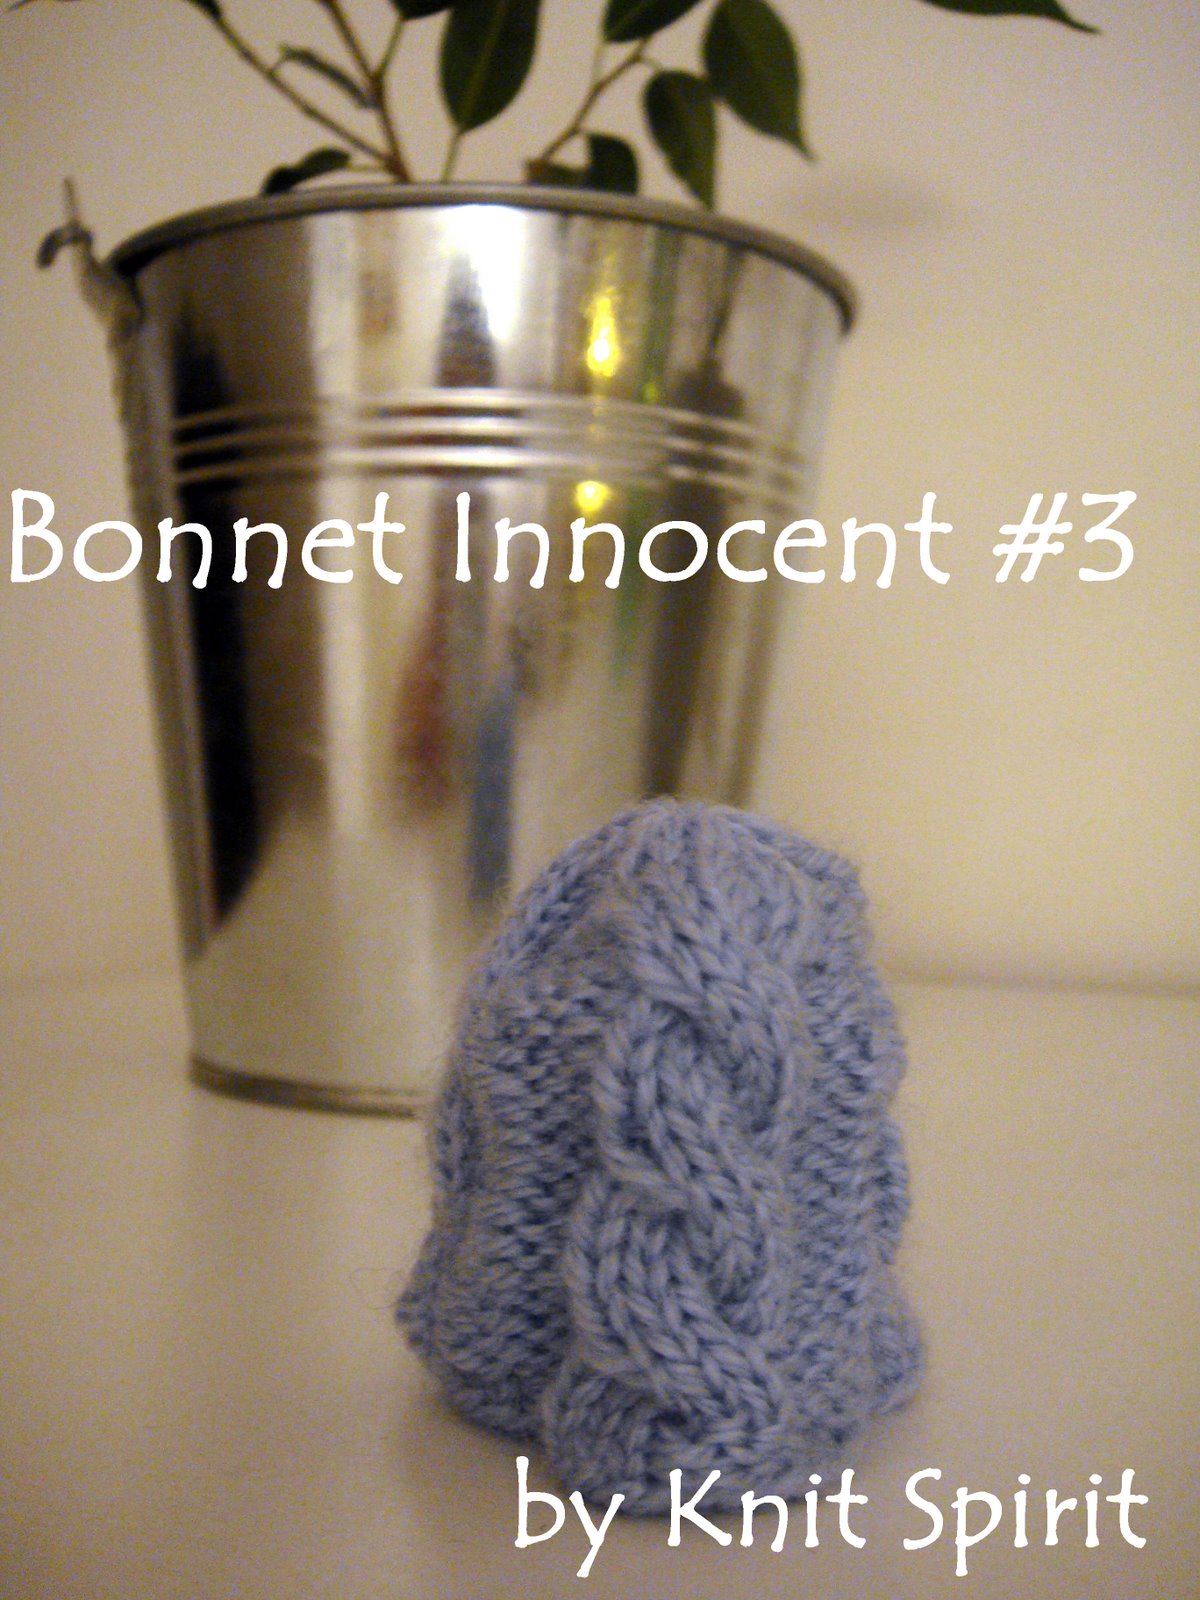 [bonnet_innocent_3.jpg]